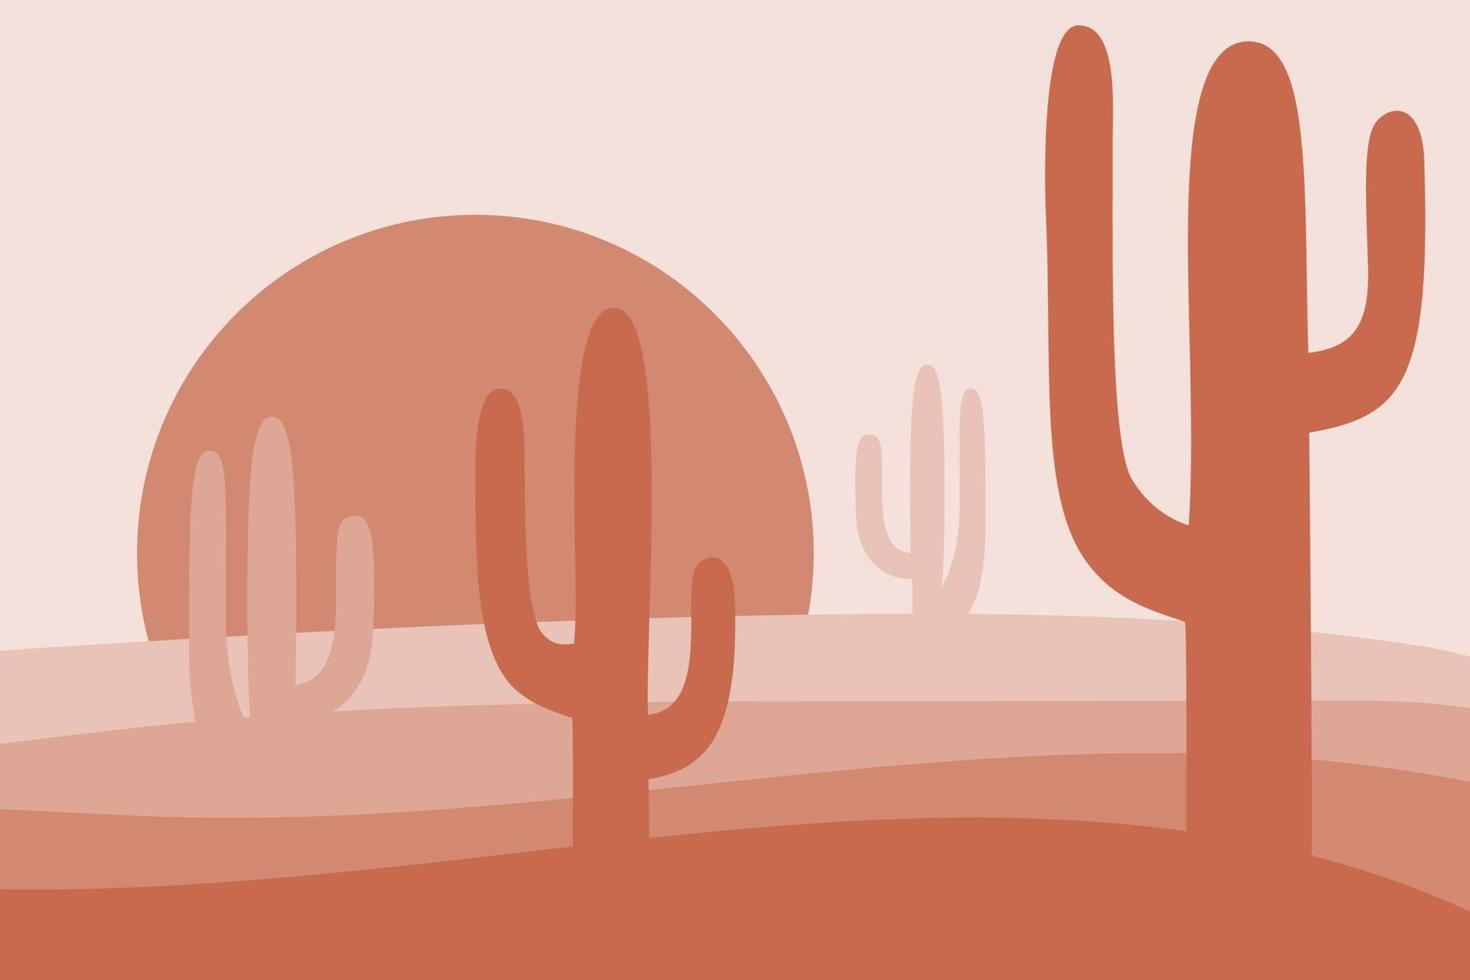 öken- landsacpe med kaktusar vektor